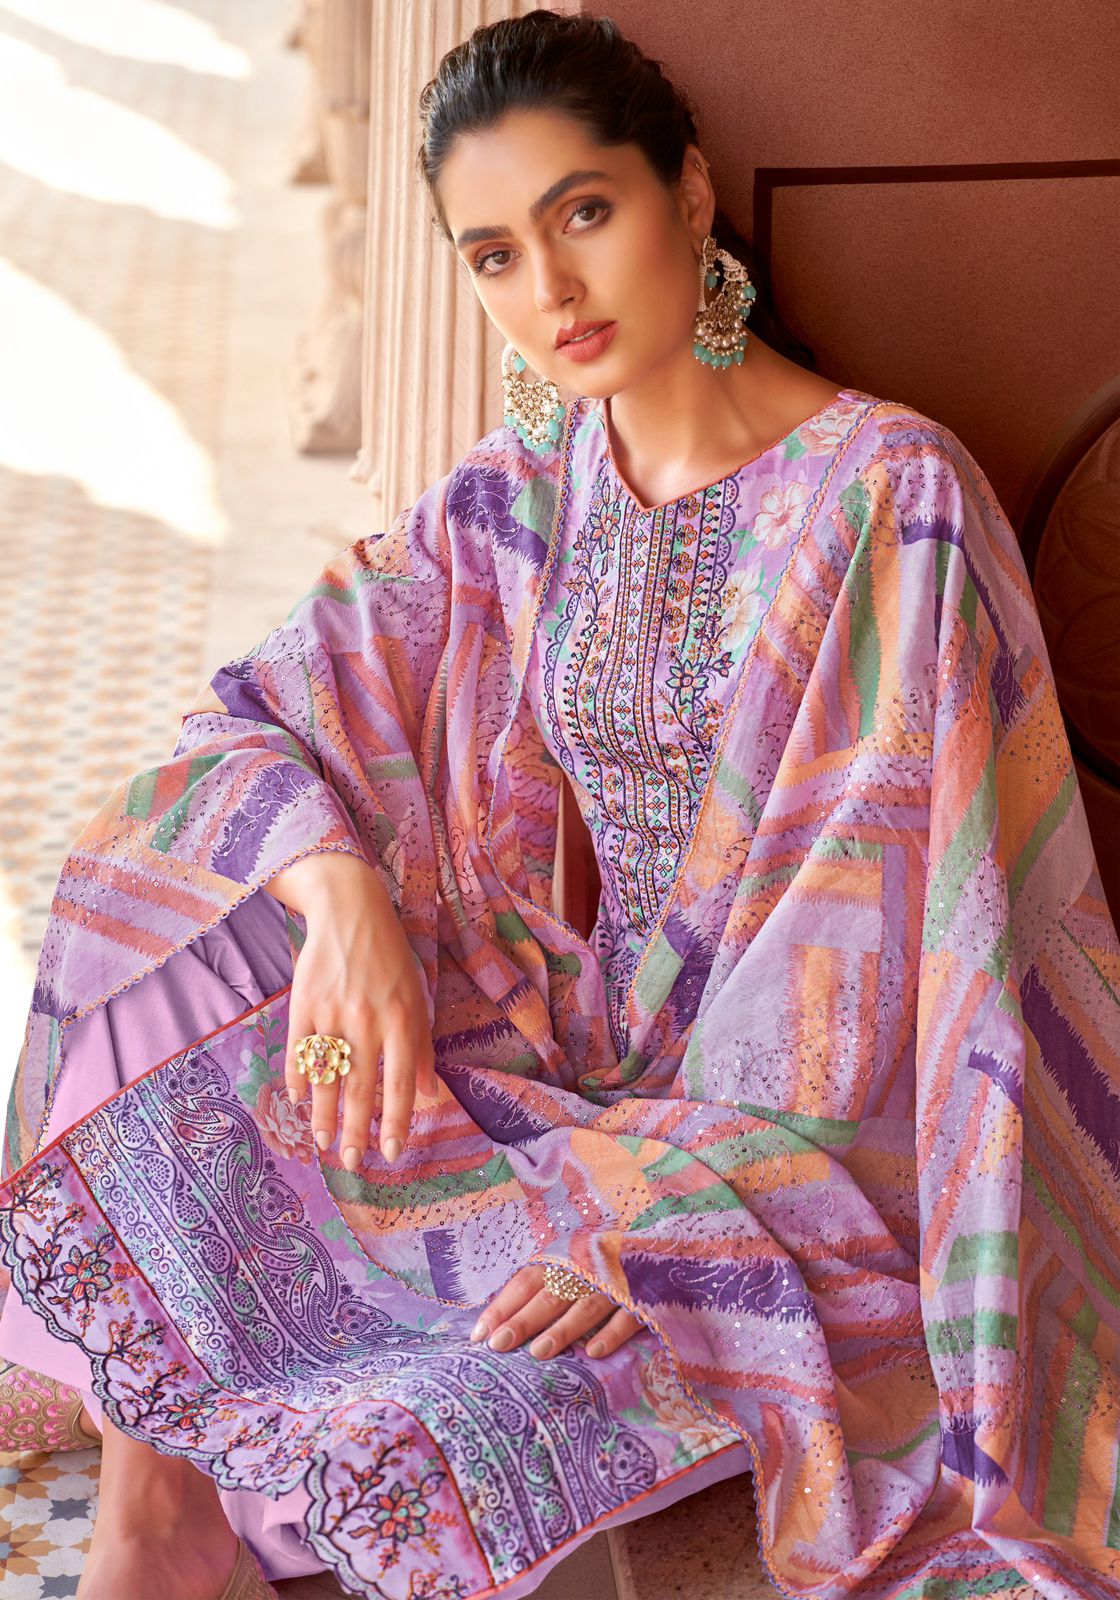 Adaah Vol 2 Alok Cambric Cotton Karachi Salwar Suits